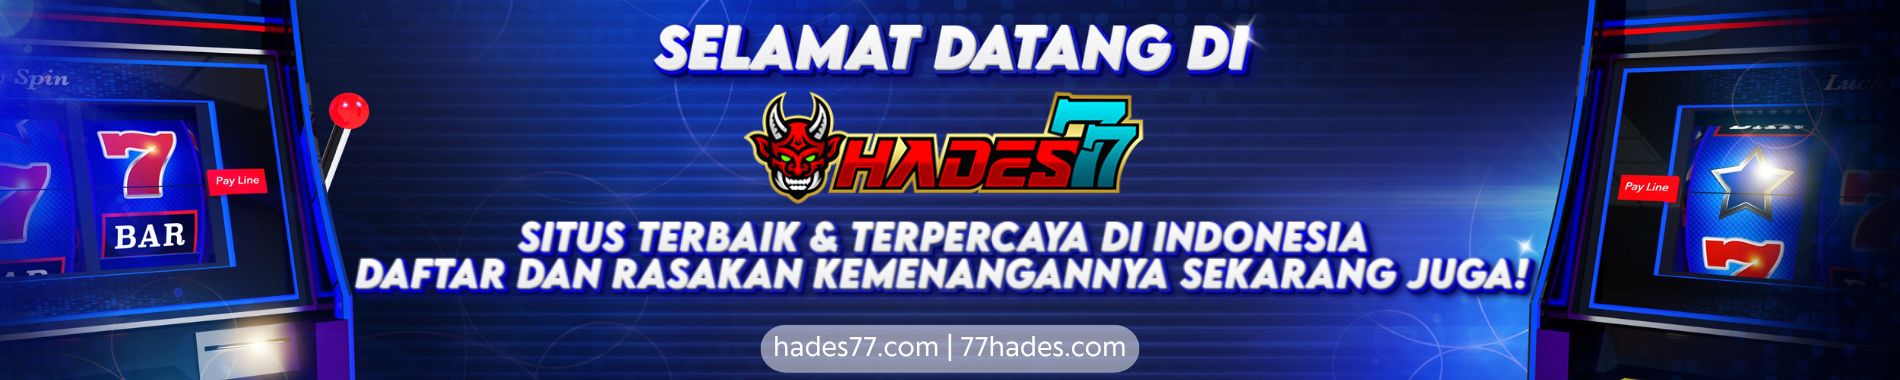 Hades77